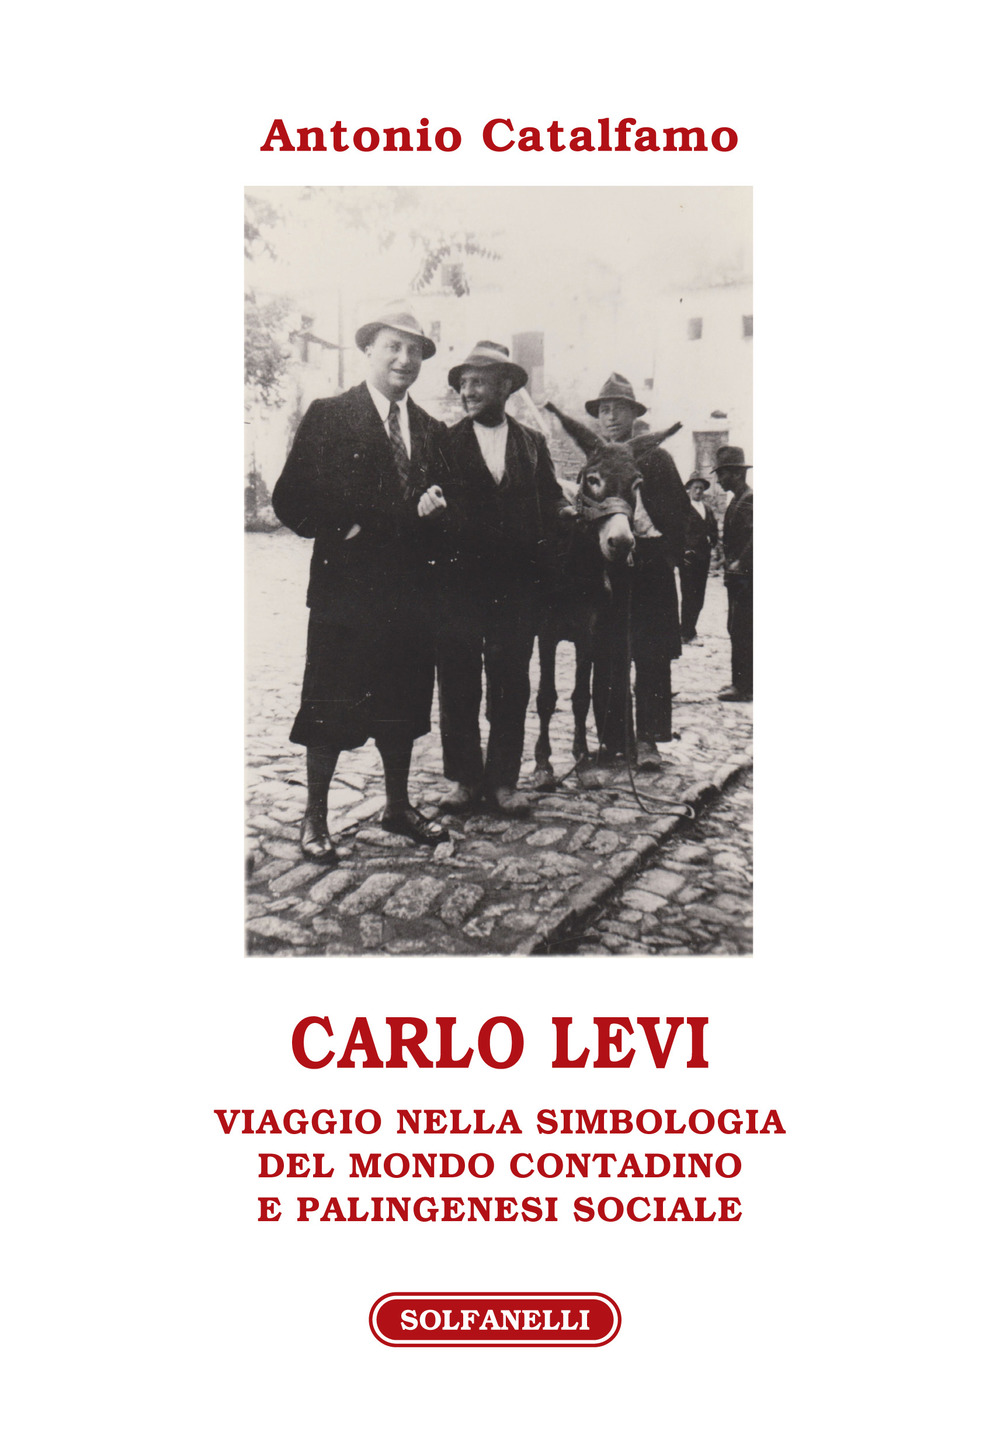 Image of Carlo Levi. Viaggio nella simbologia del mondo contadino e palingenesi sociale